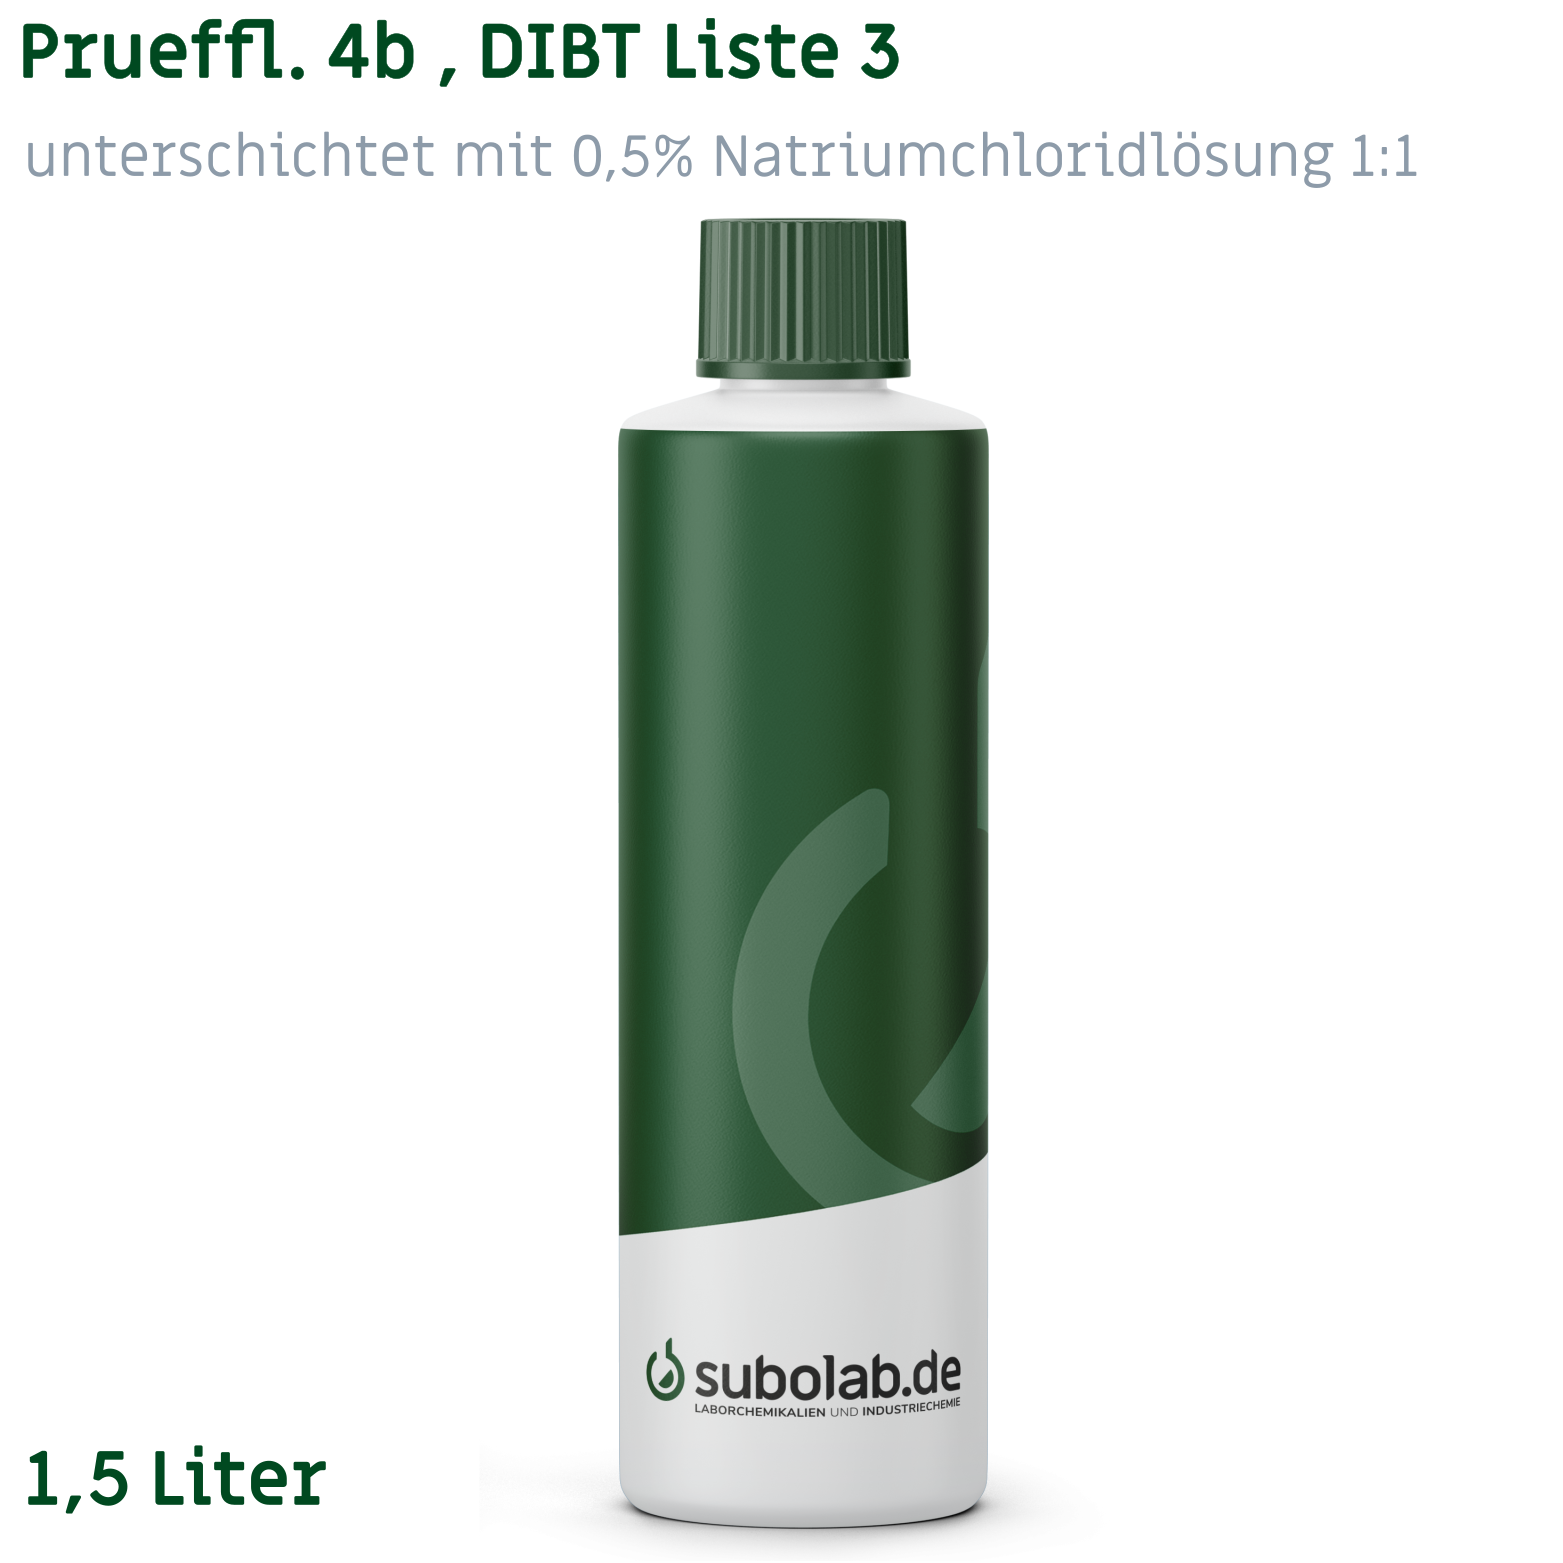 Bild von Prueffl. 4b , DIBT Liste 3, unterschichtet mit 0,5% Natriumchloridlösung 1:1 (1,5 Liter)